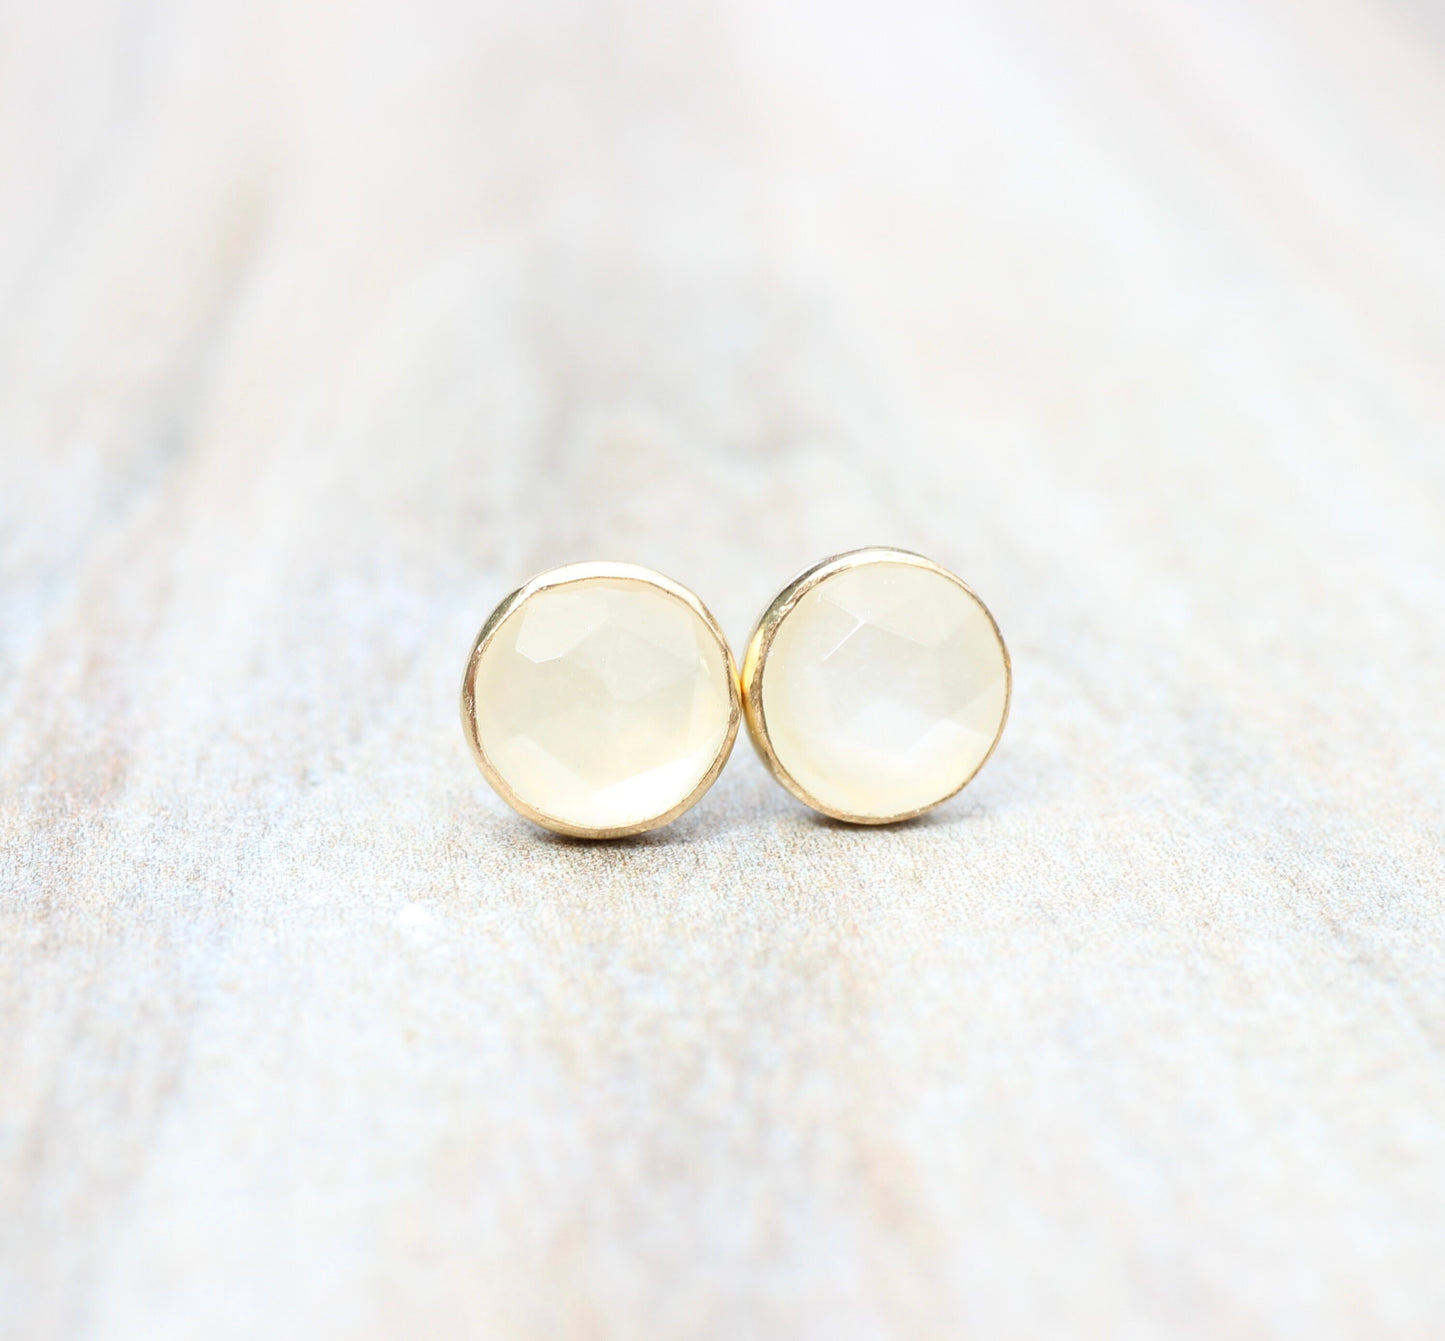 Sterling Silver Moonstone Earrings // Rose Cut White Moonstone Stud Earrings // 6mm Moonstone Cabochon Earrings // Gemstone Studs